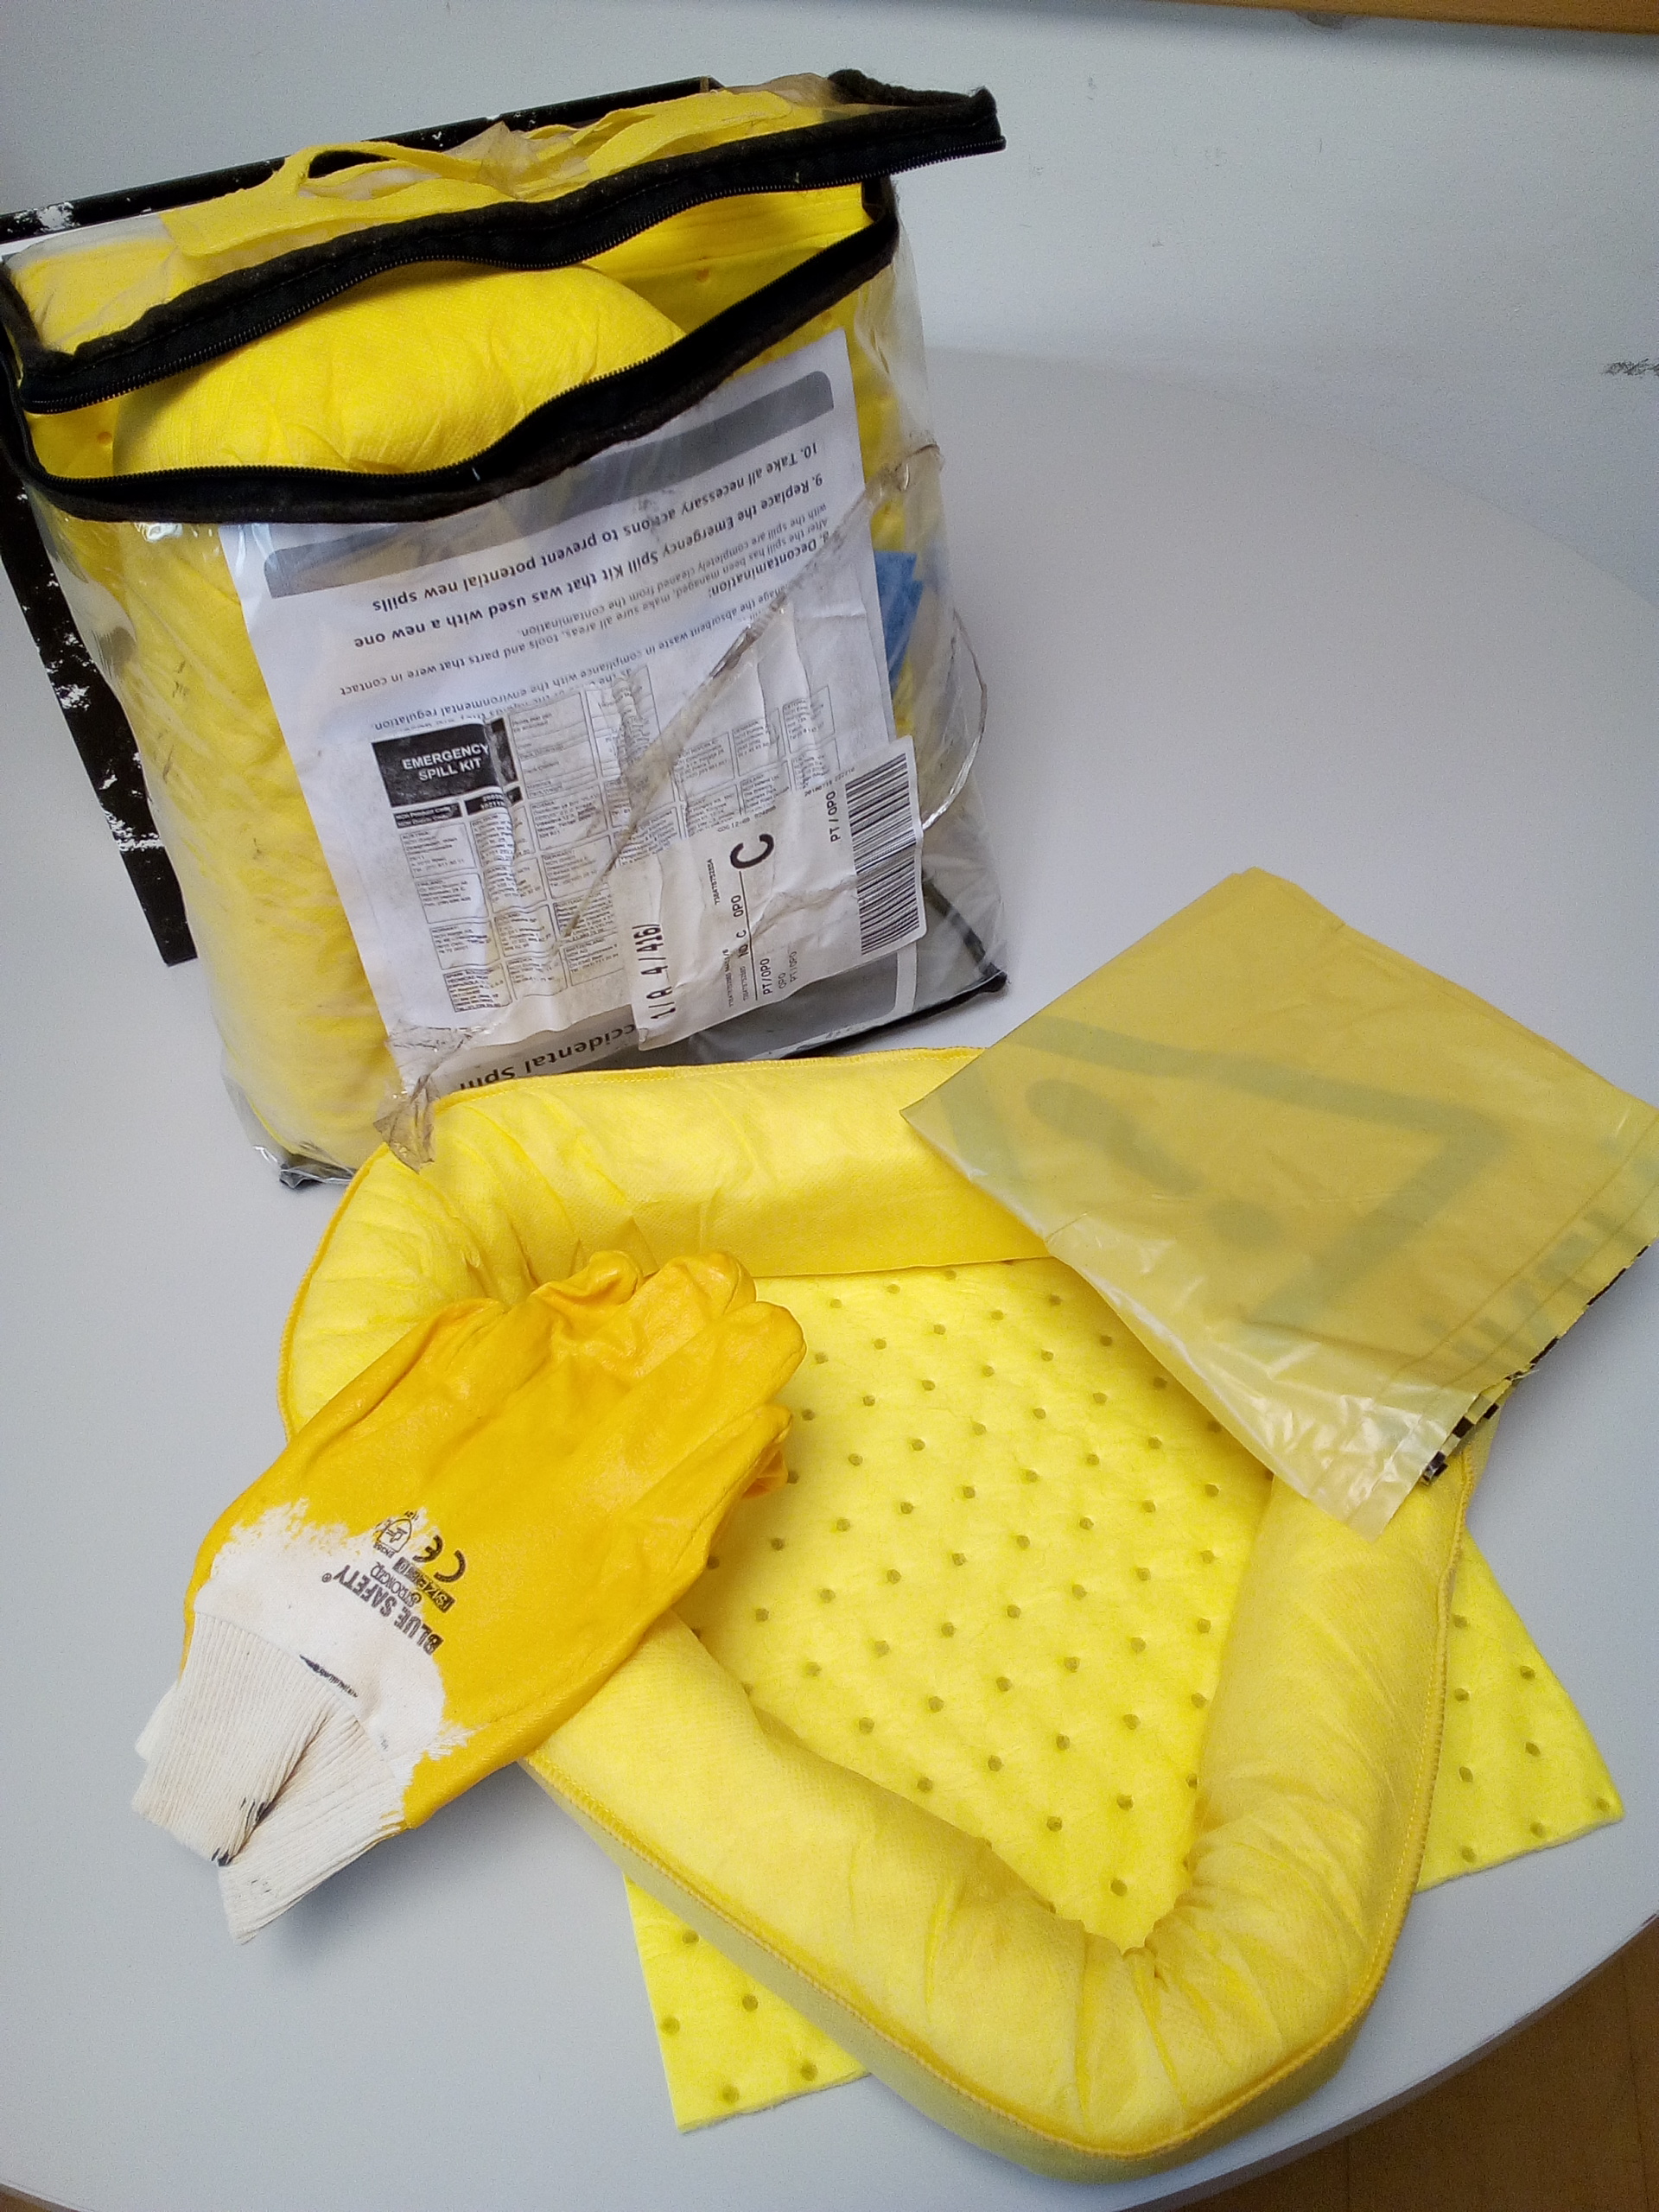 Kits de emergencia ambiental entregados a los encargados de obra